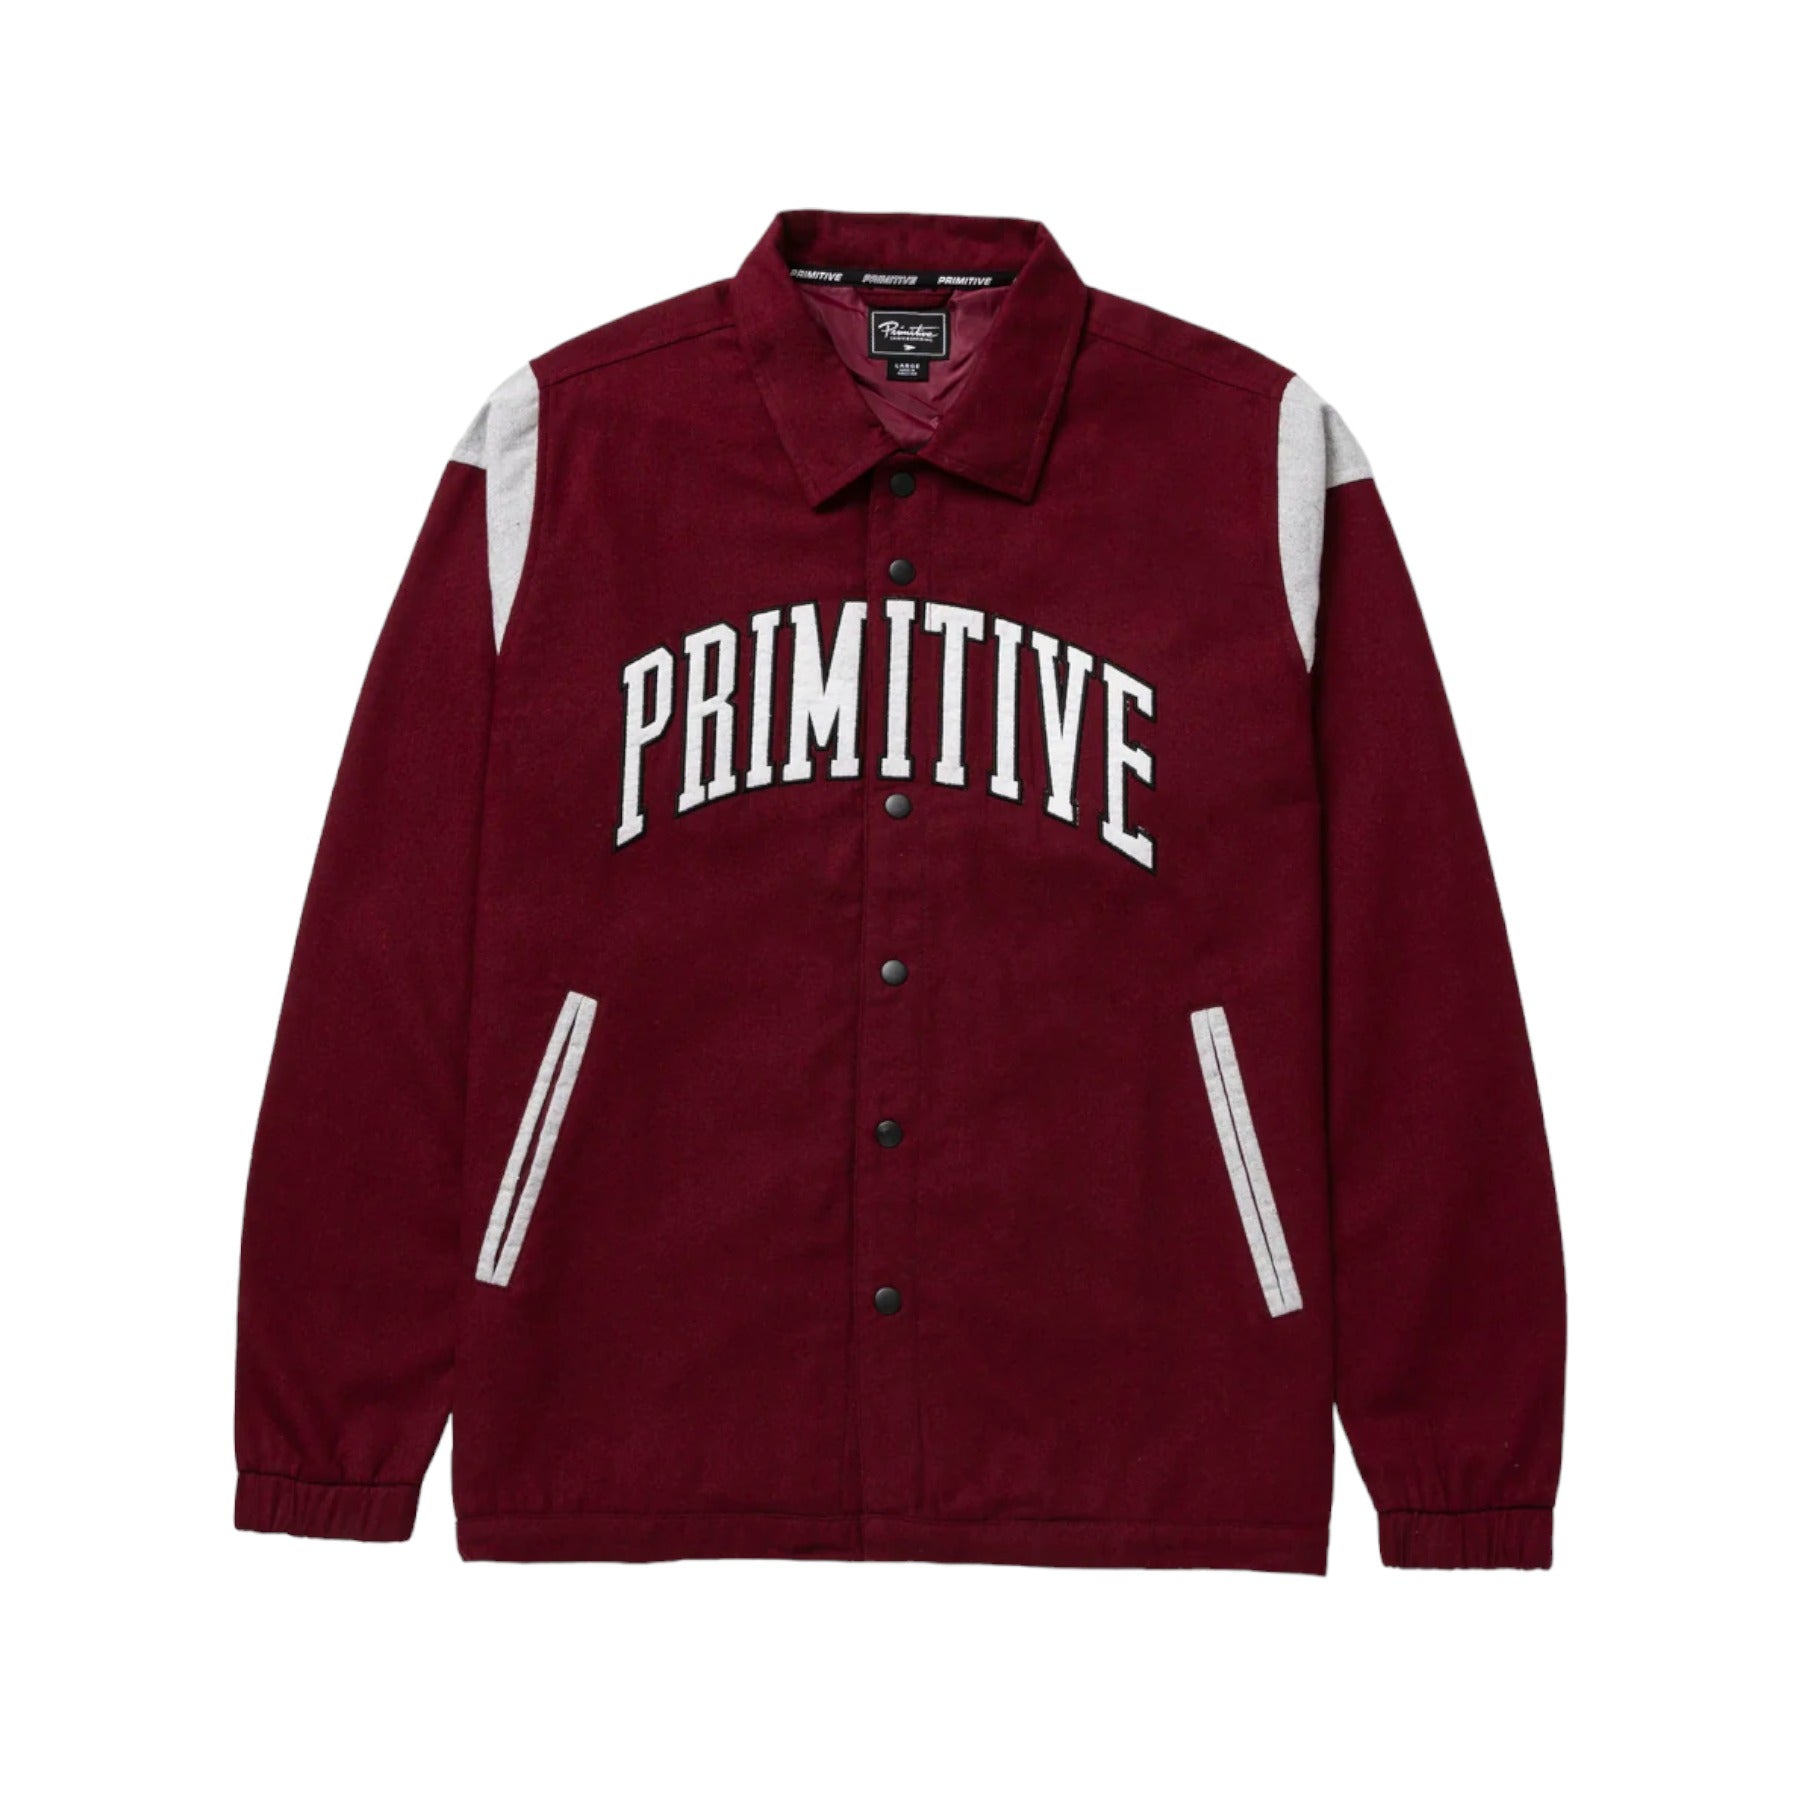 Primitive Collegiate Wool Jacket - Burgundy